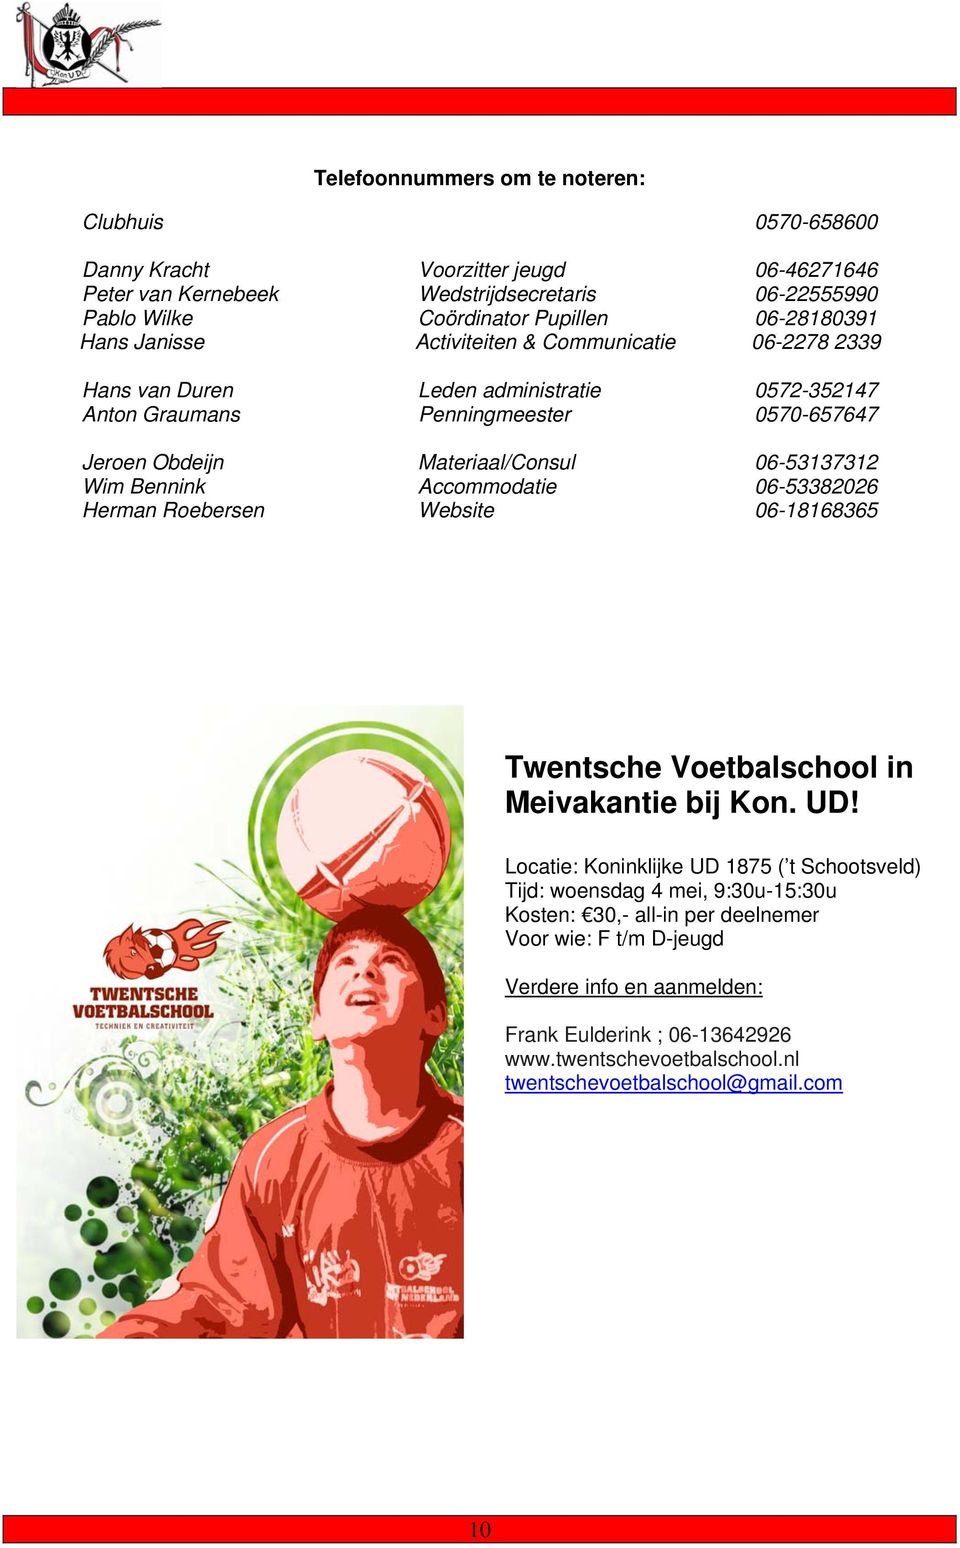 Bennink Accommodatie 06-53382026 Herman Roebersen Website 06-18168365 Twentsche Voetbalschool in Meivakantie bij Kon. UD!